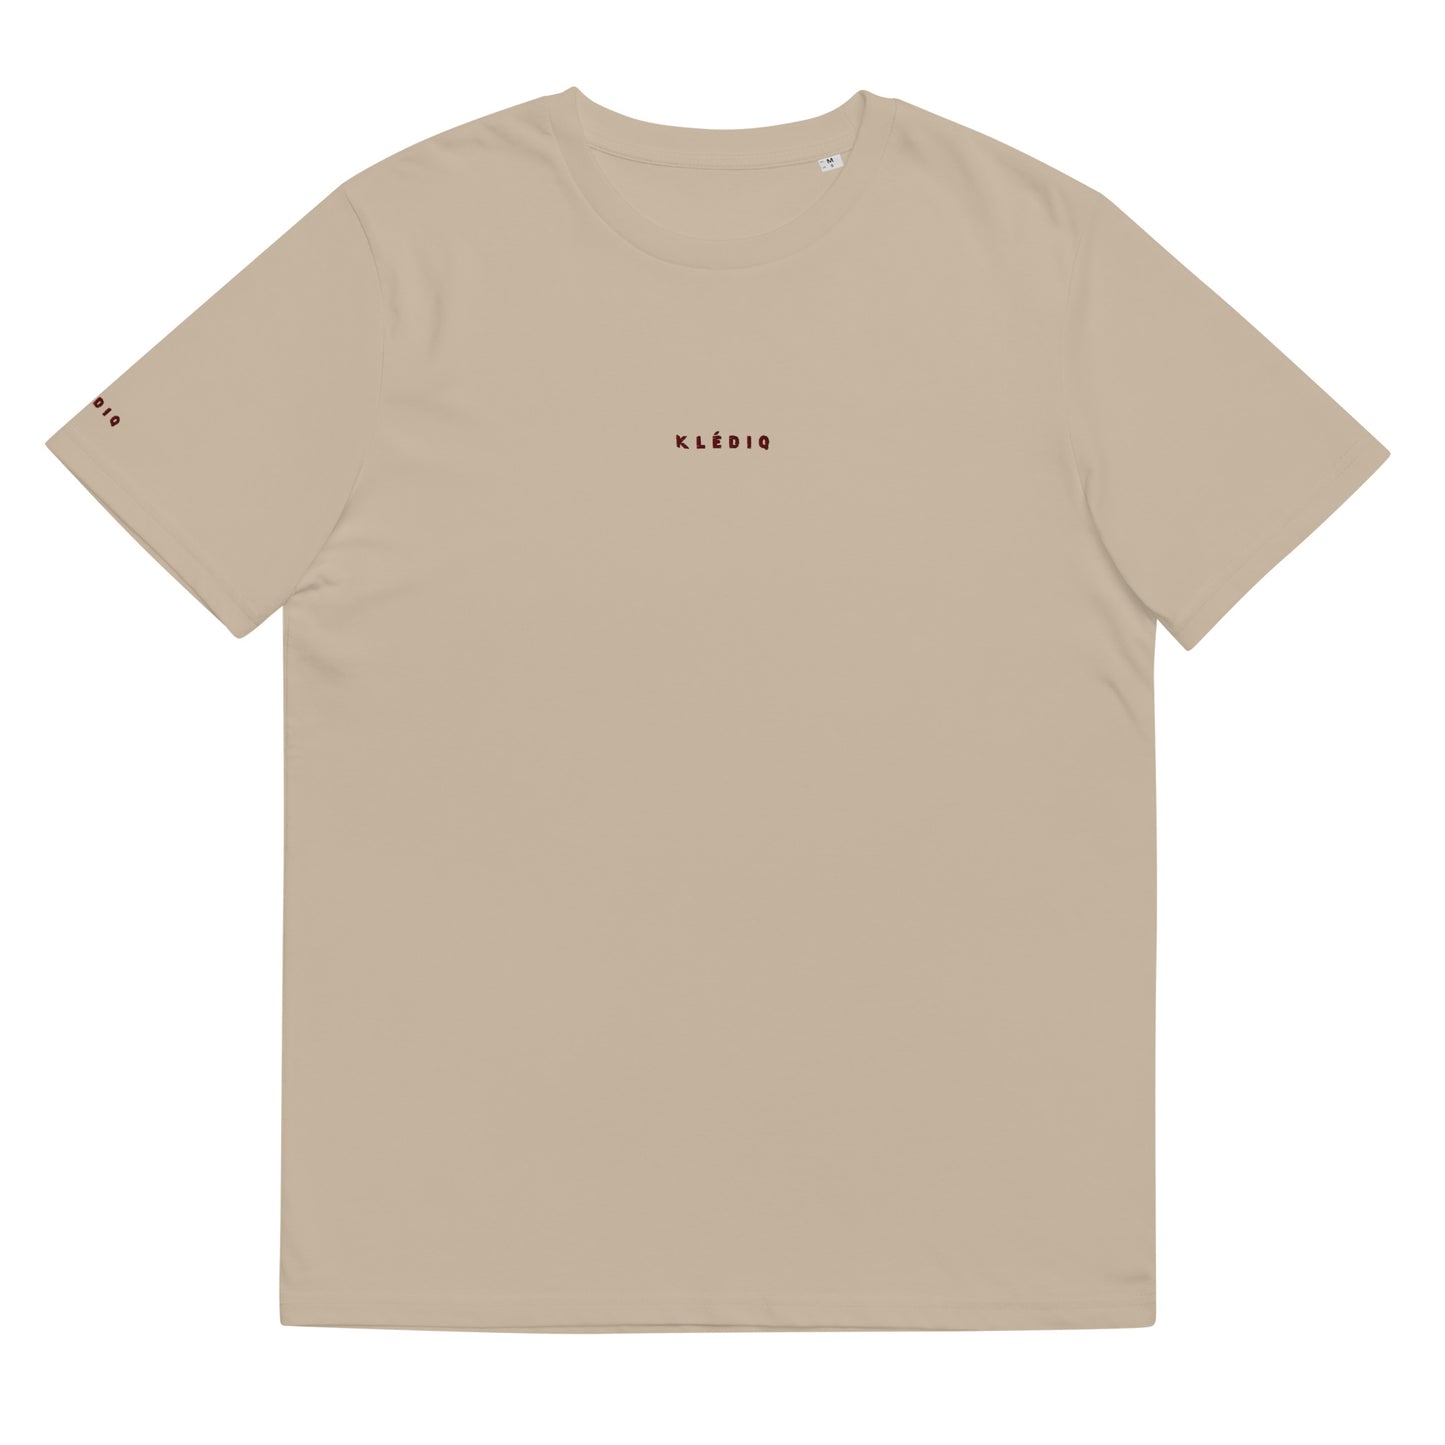 Klediq T-shirt / Desert dust